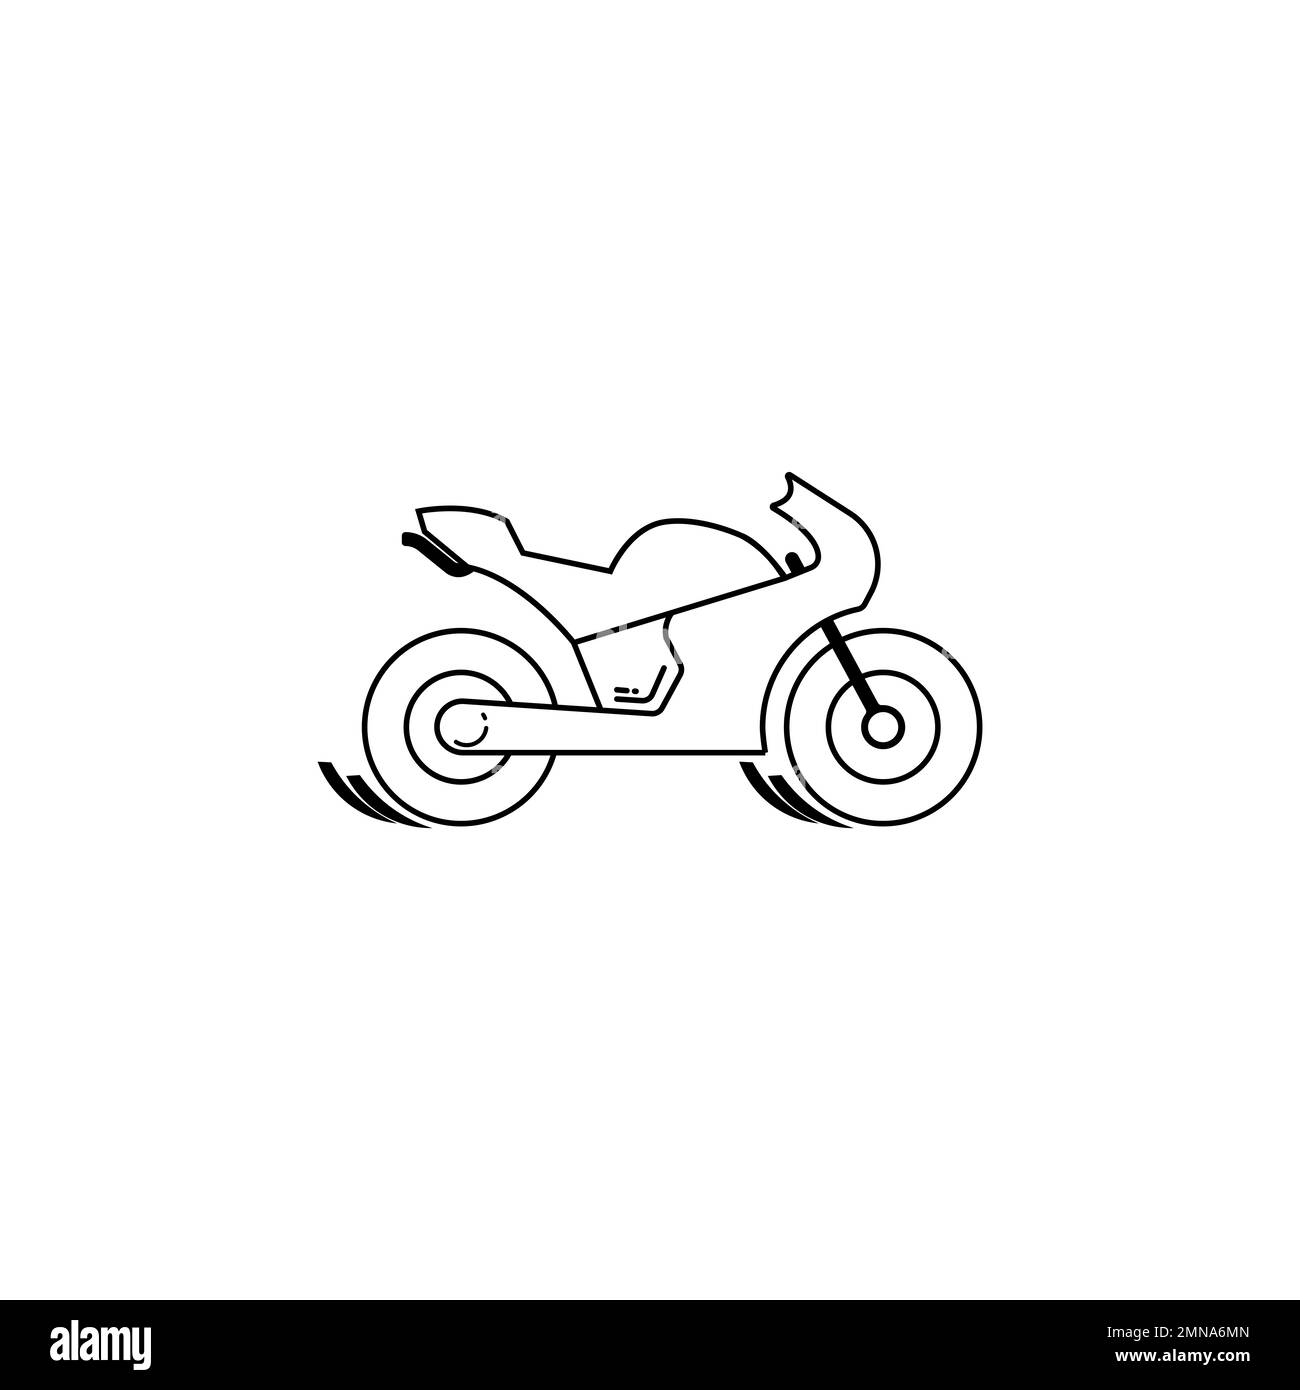 Motorbike pictogram -Fotos und -Bildmaterial in hoher Auflösung - Seite 3 -  Alamy